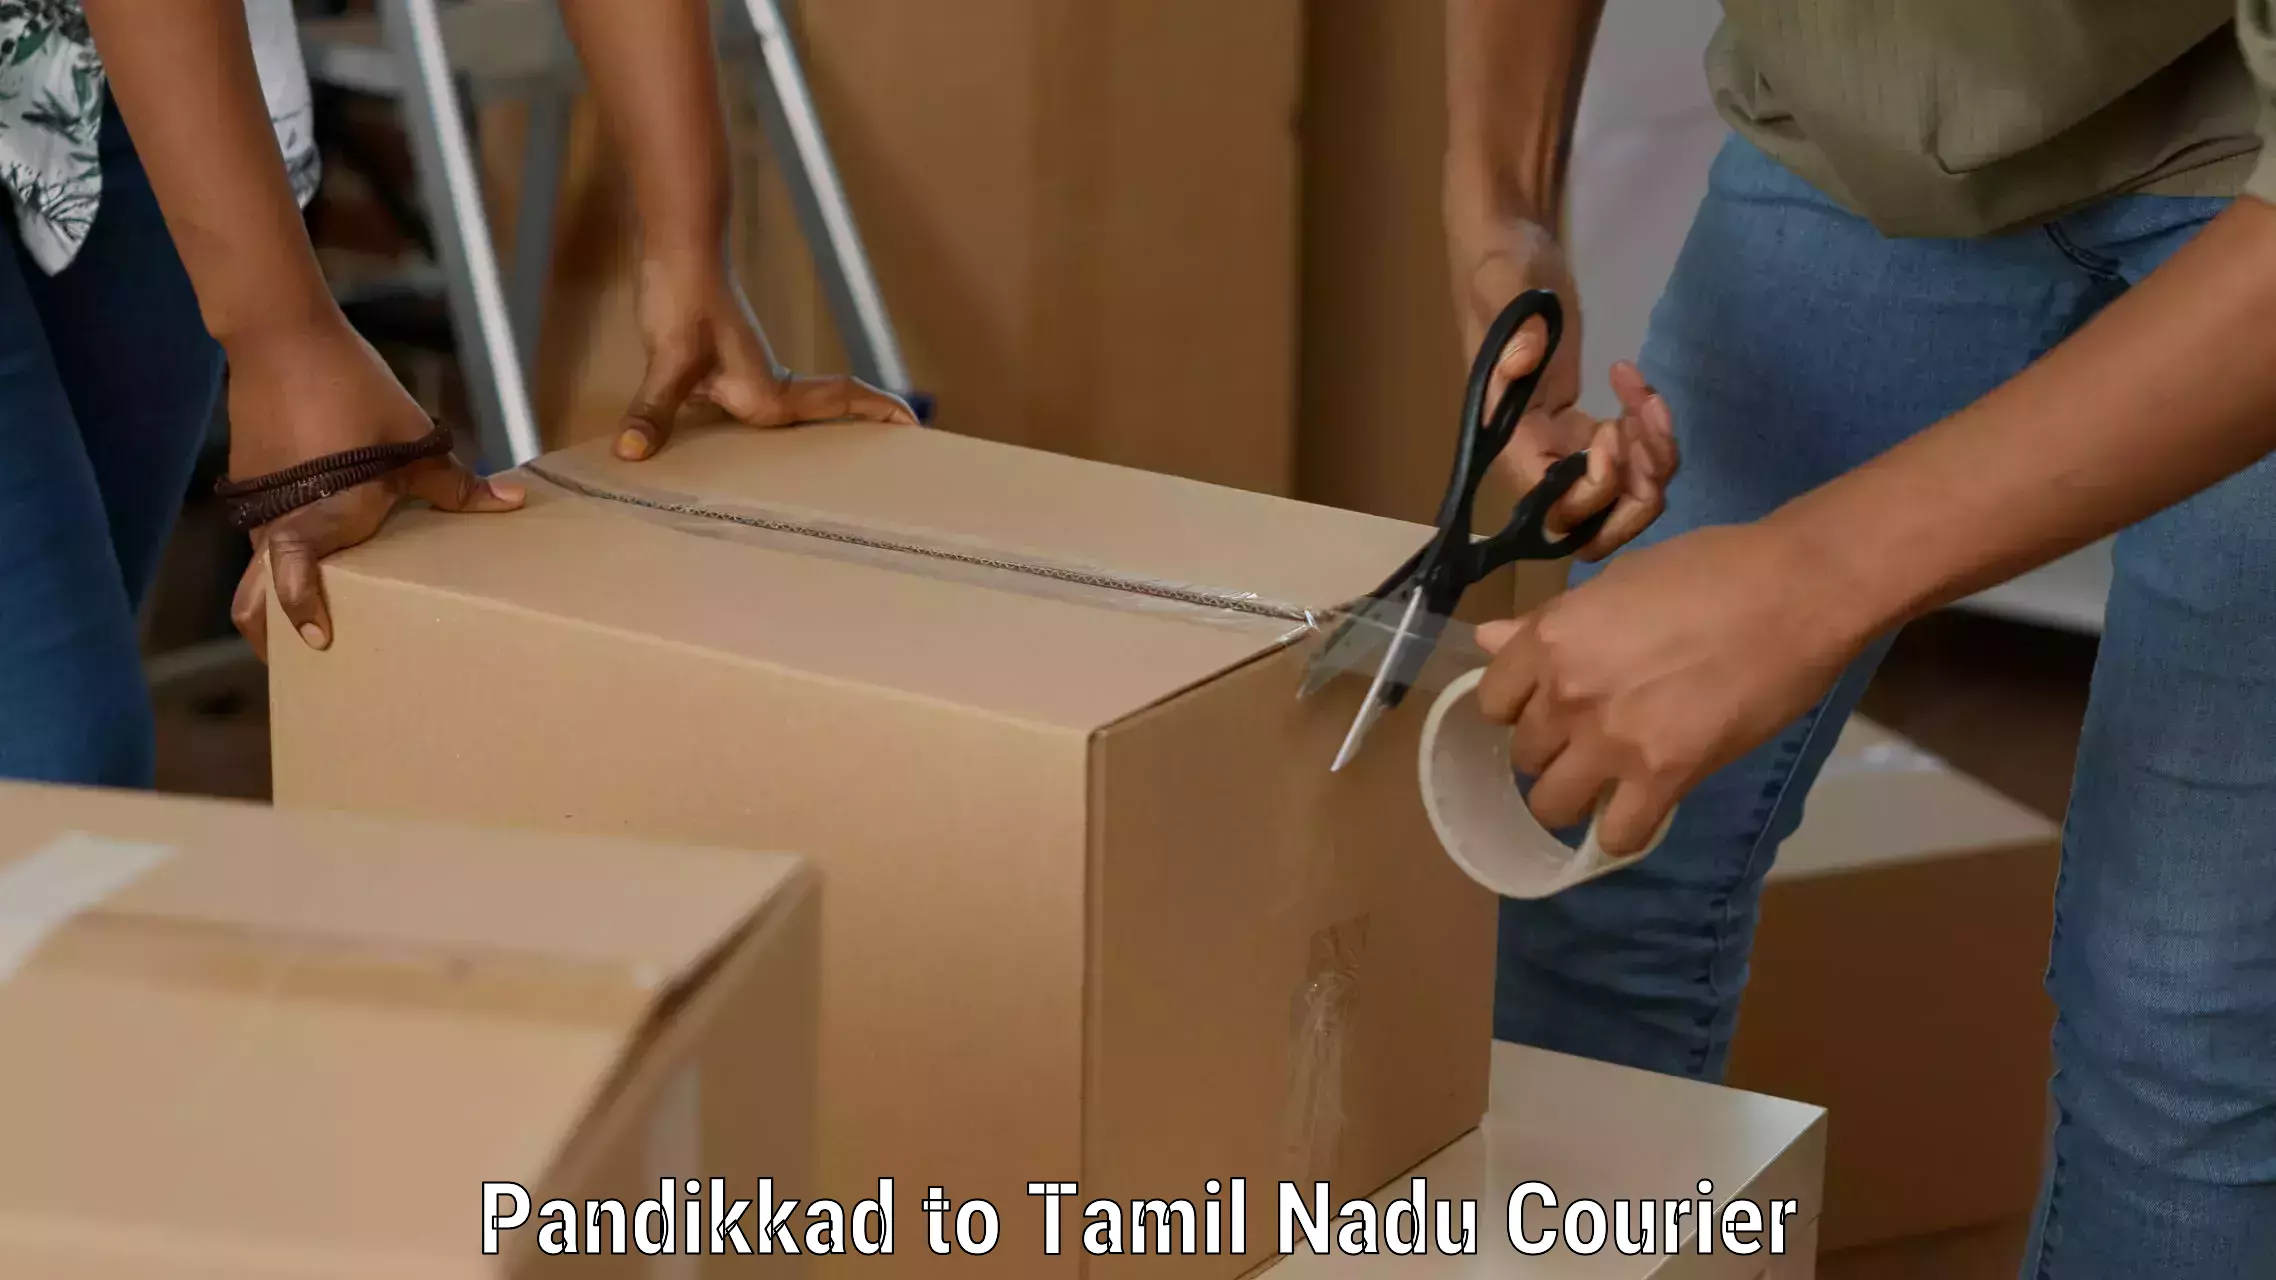 Discounted shipping Pandikkad to Gobichettipalayam